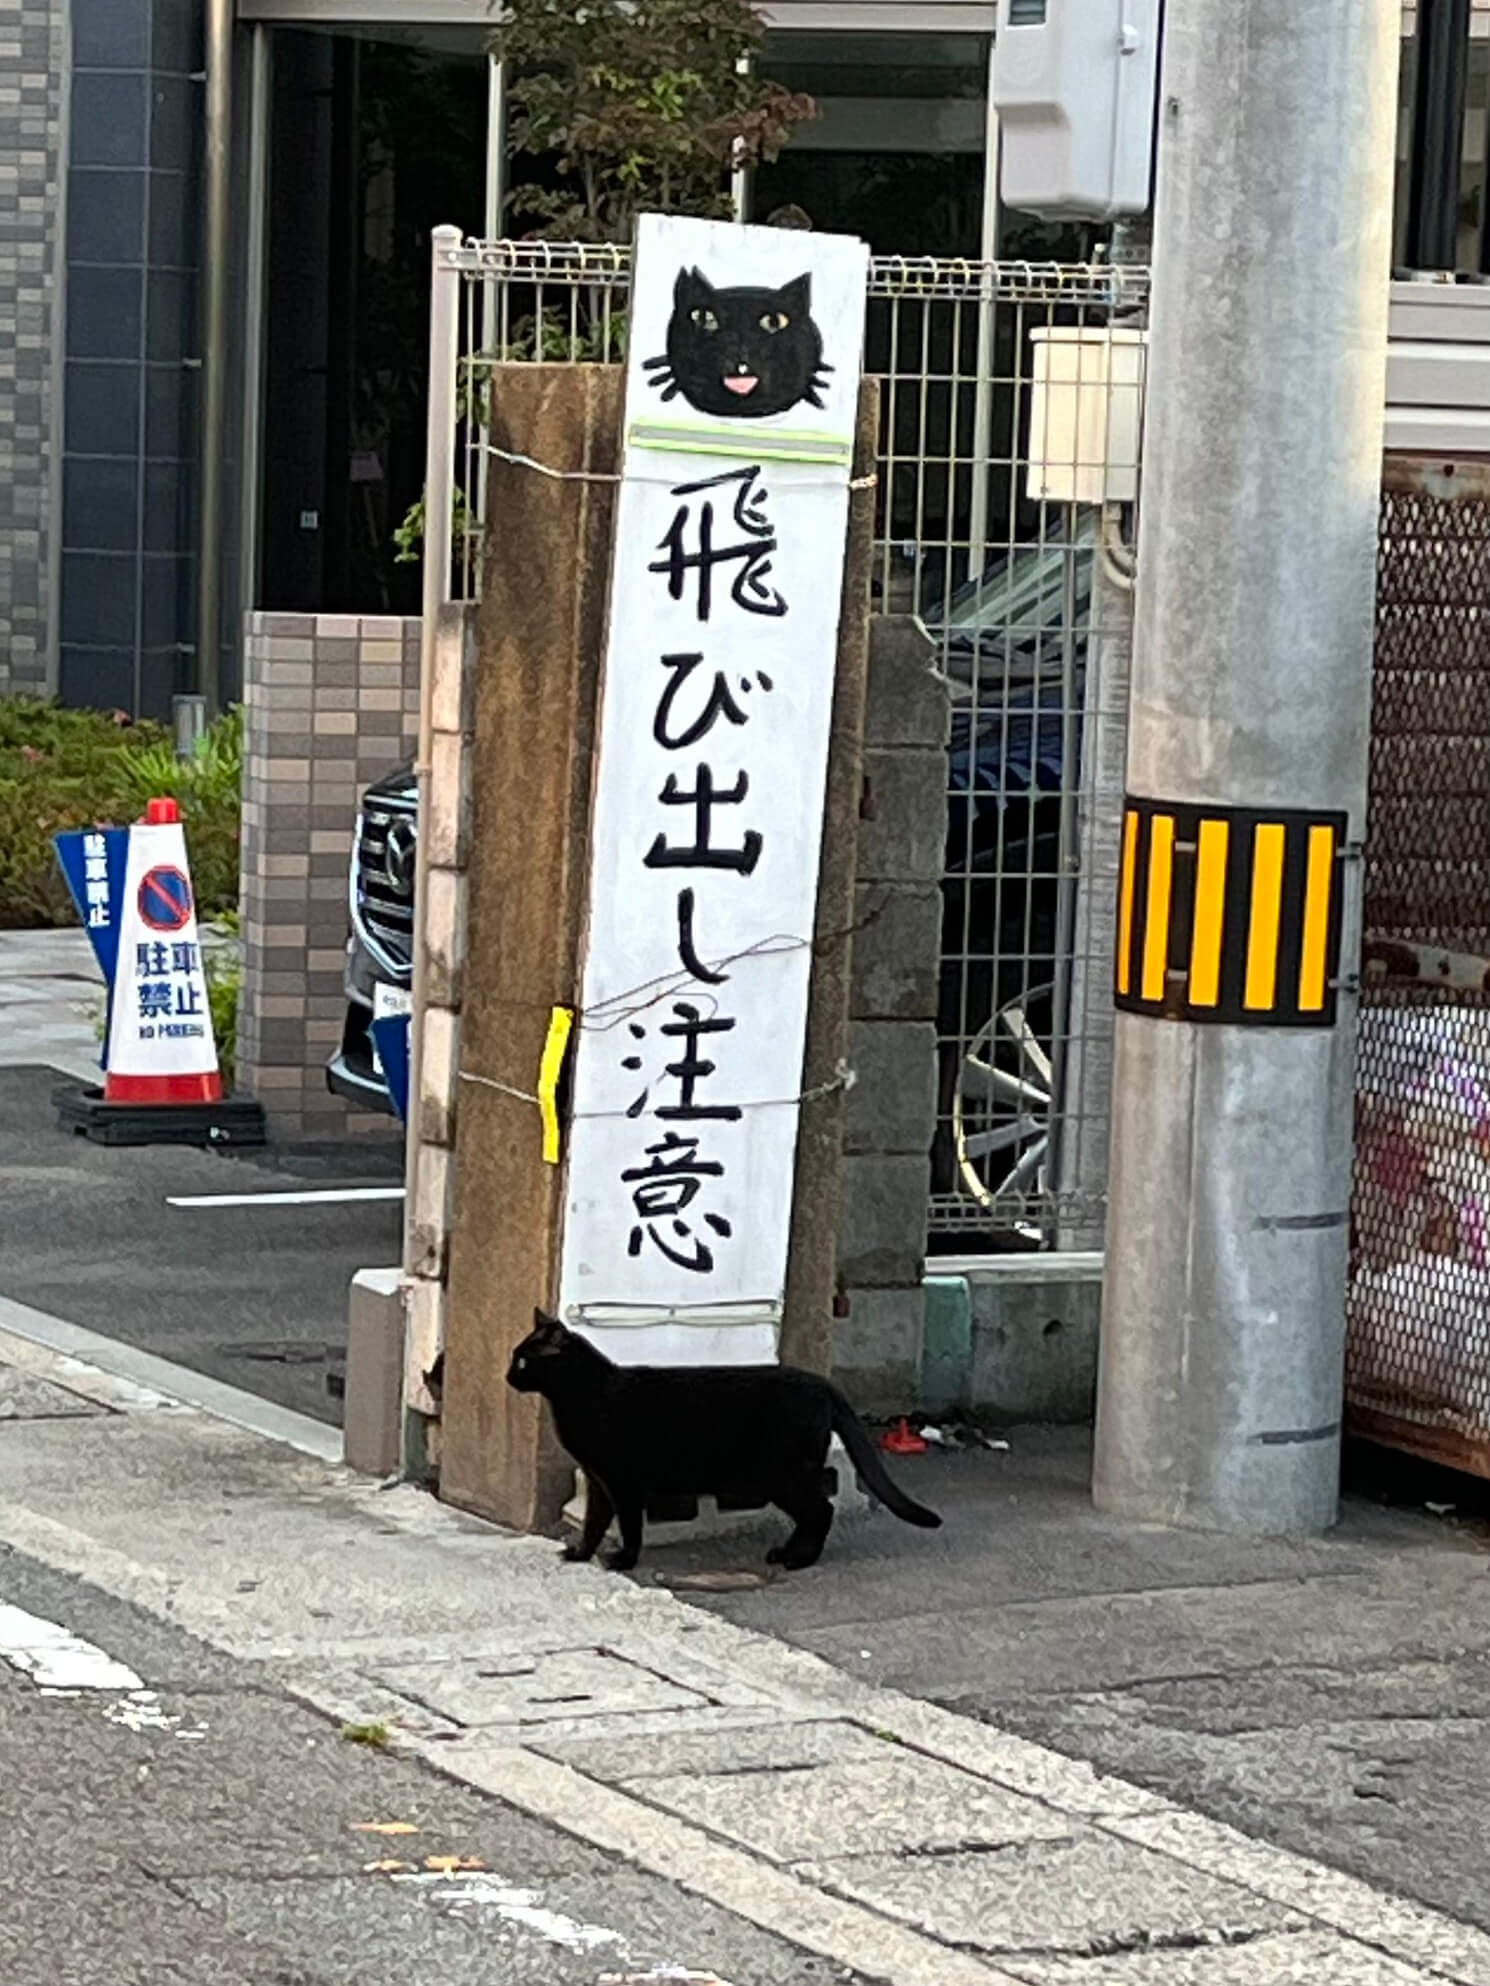 「猫飛び出し注意」看板下から、道路に飛び出そうとする黒猫